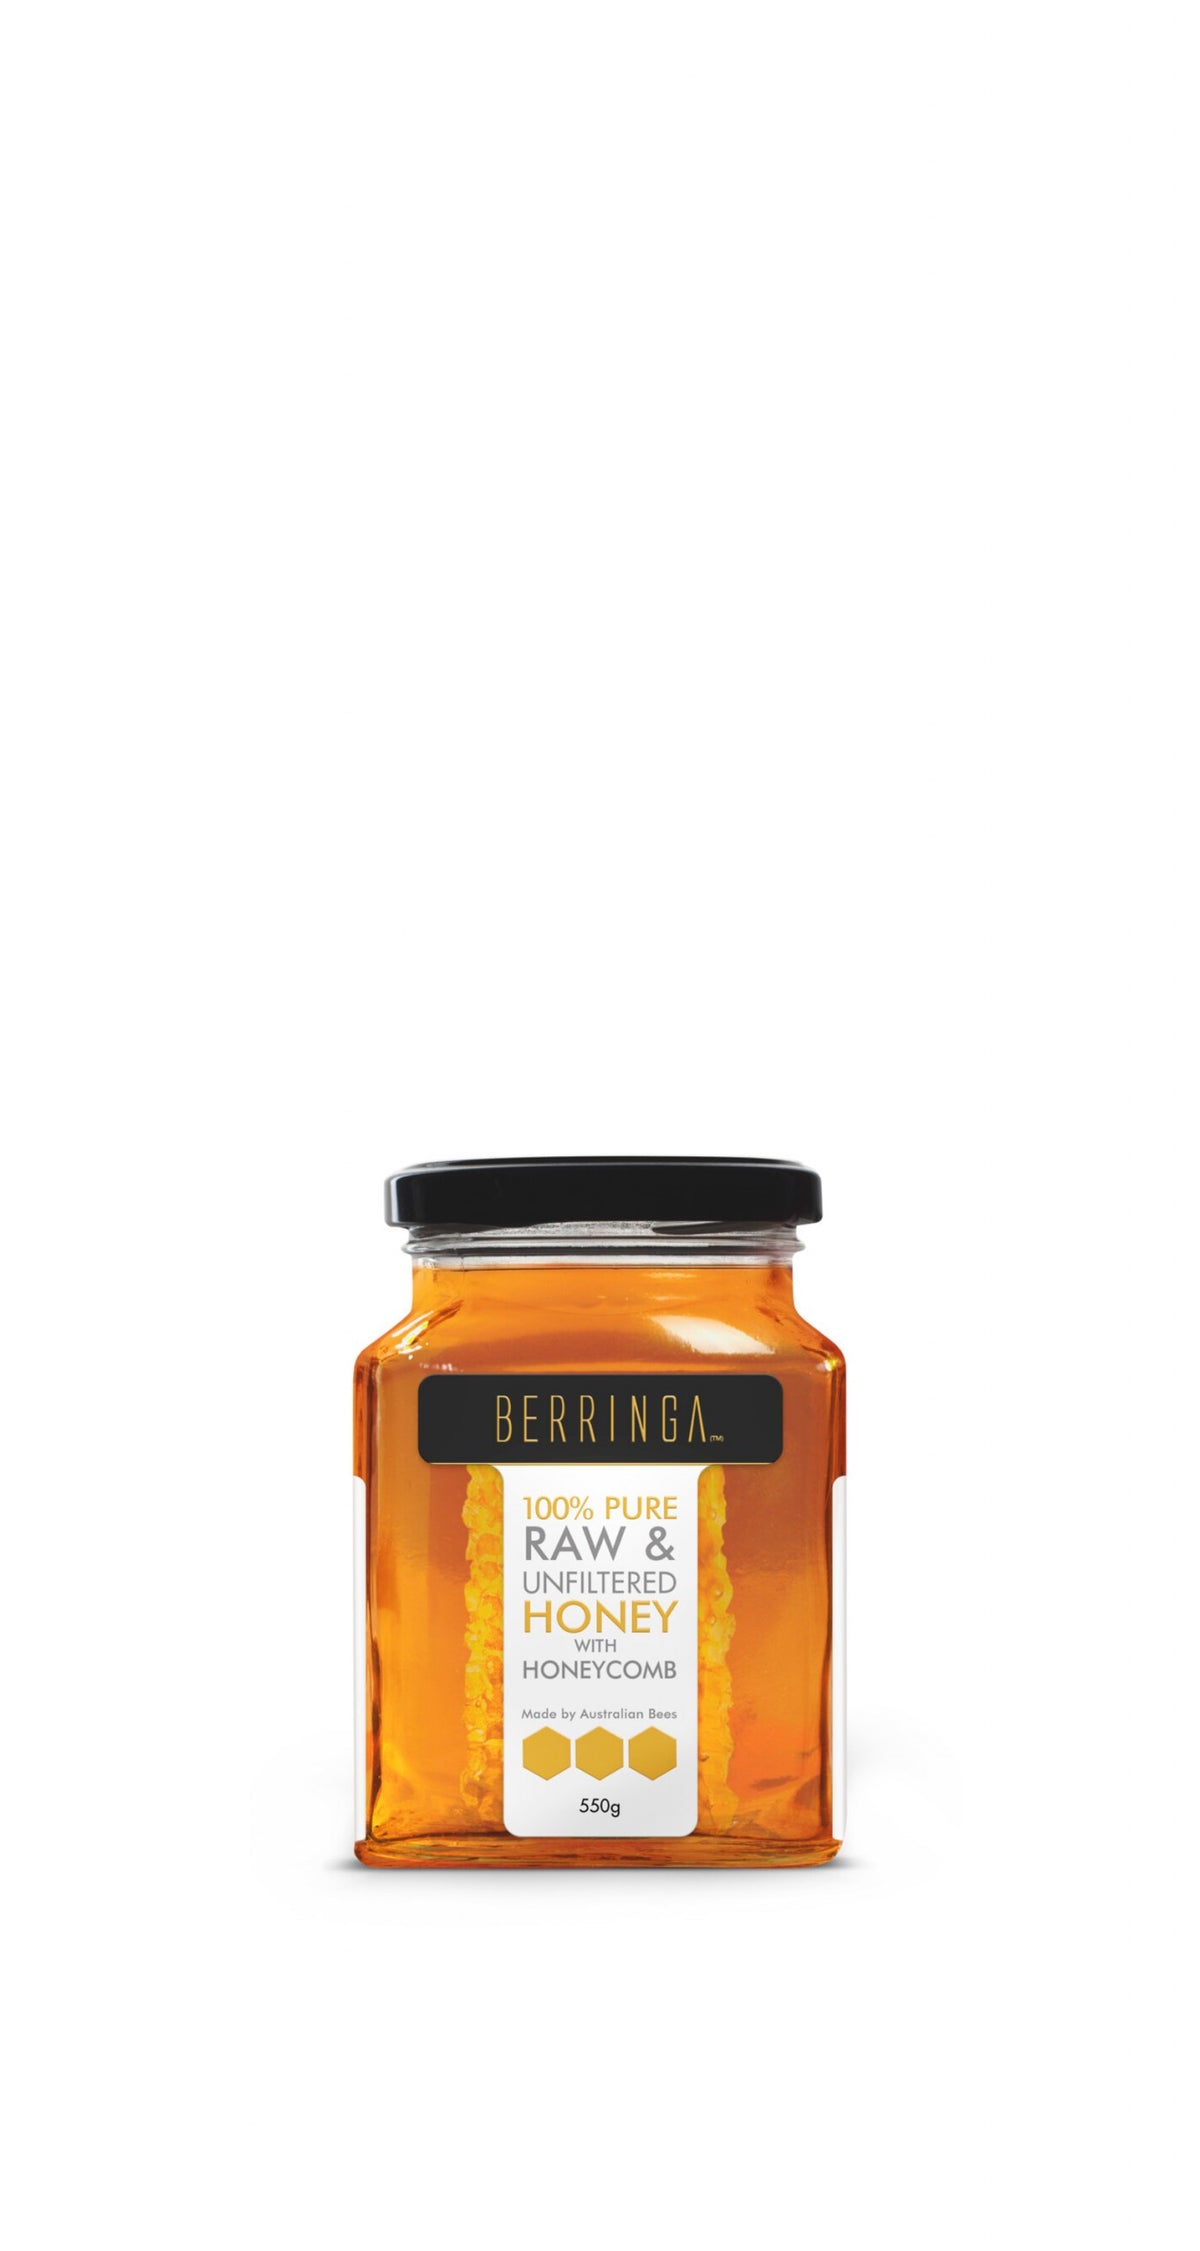 Berringa Pure Australian Raw & Unfiltered Honey with Honeycomb